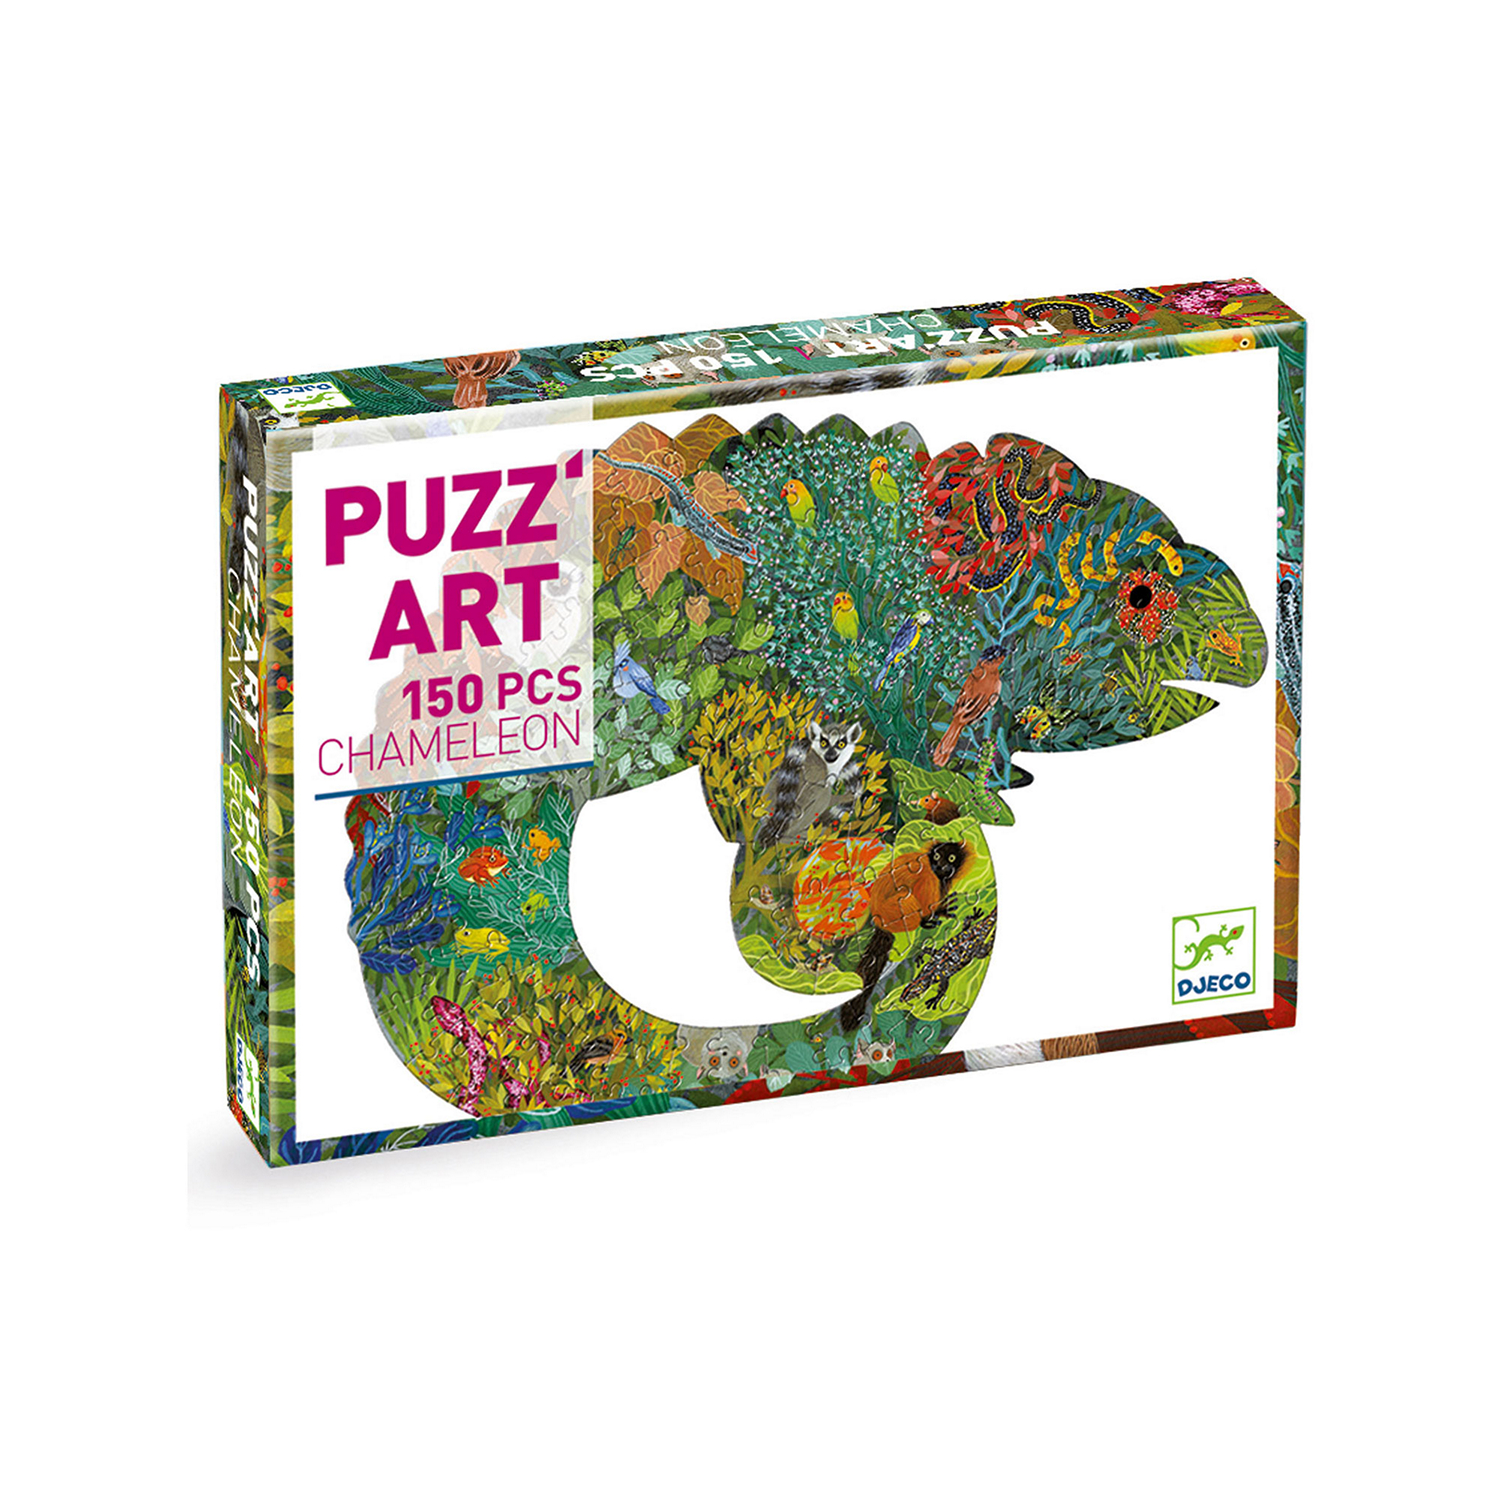 Chameleon Puzzle 150 Pieces